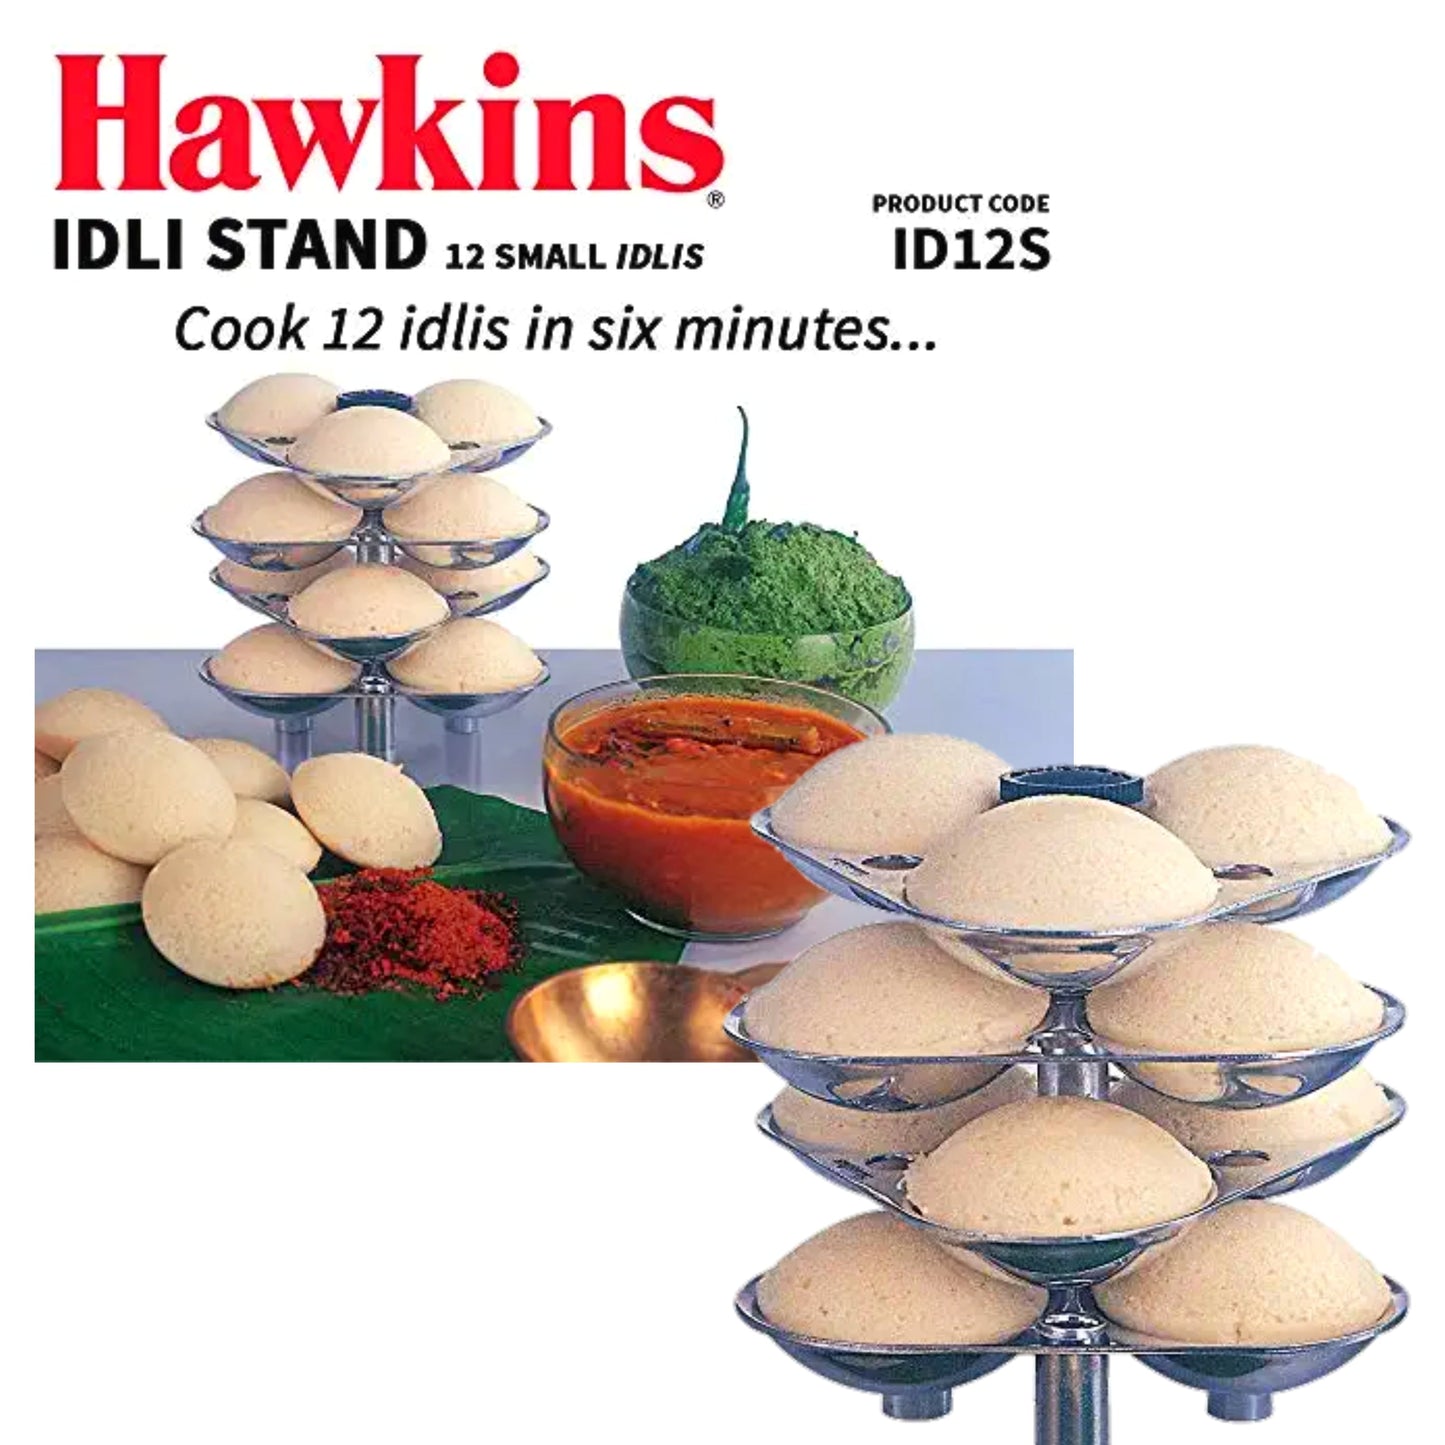 Hawkins Idli Stand (4 plates)